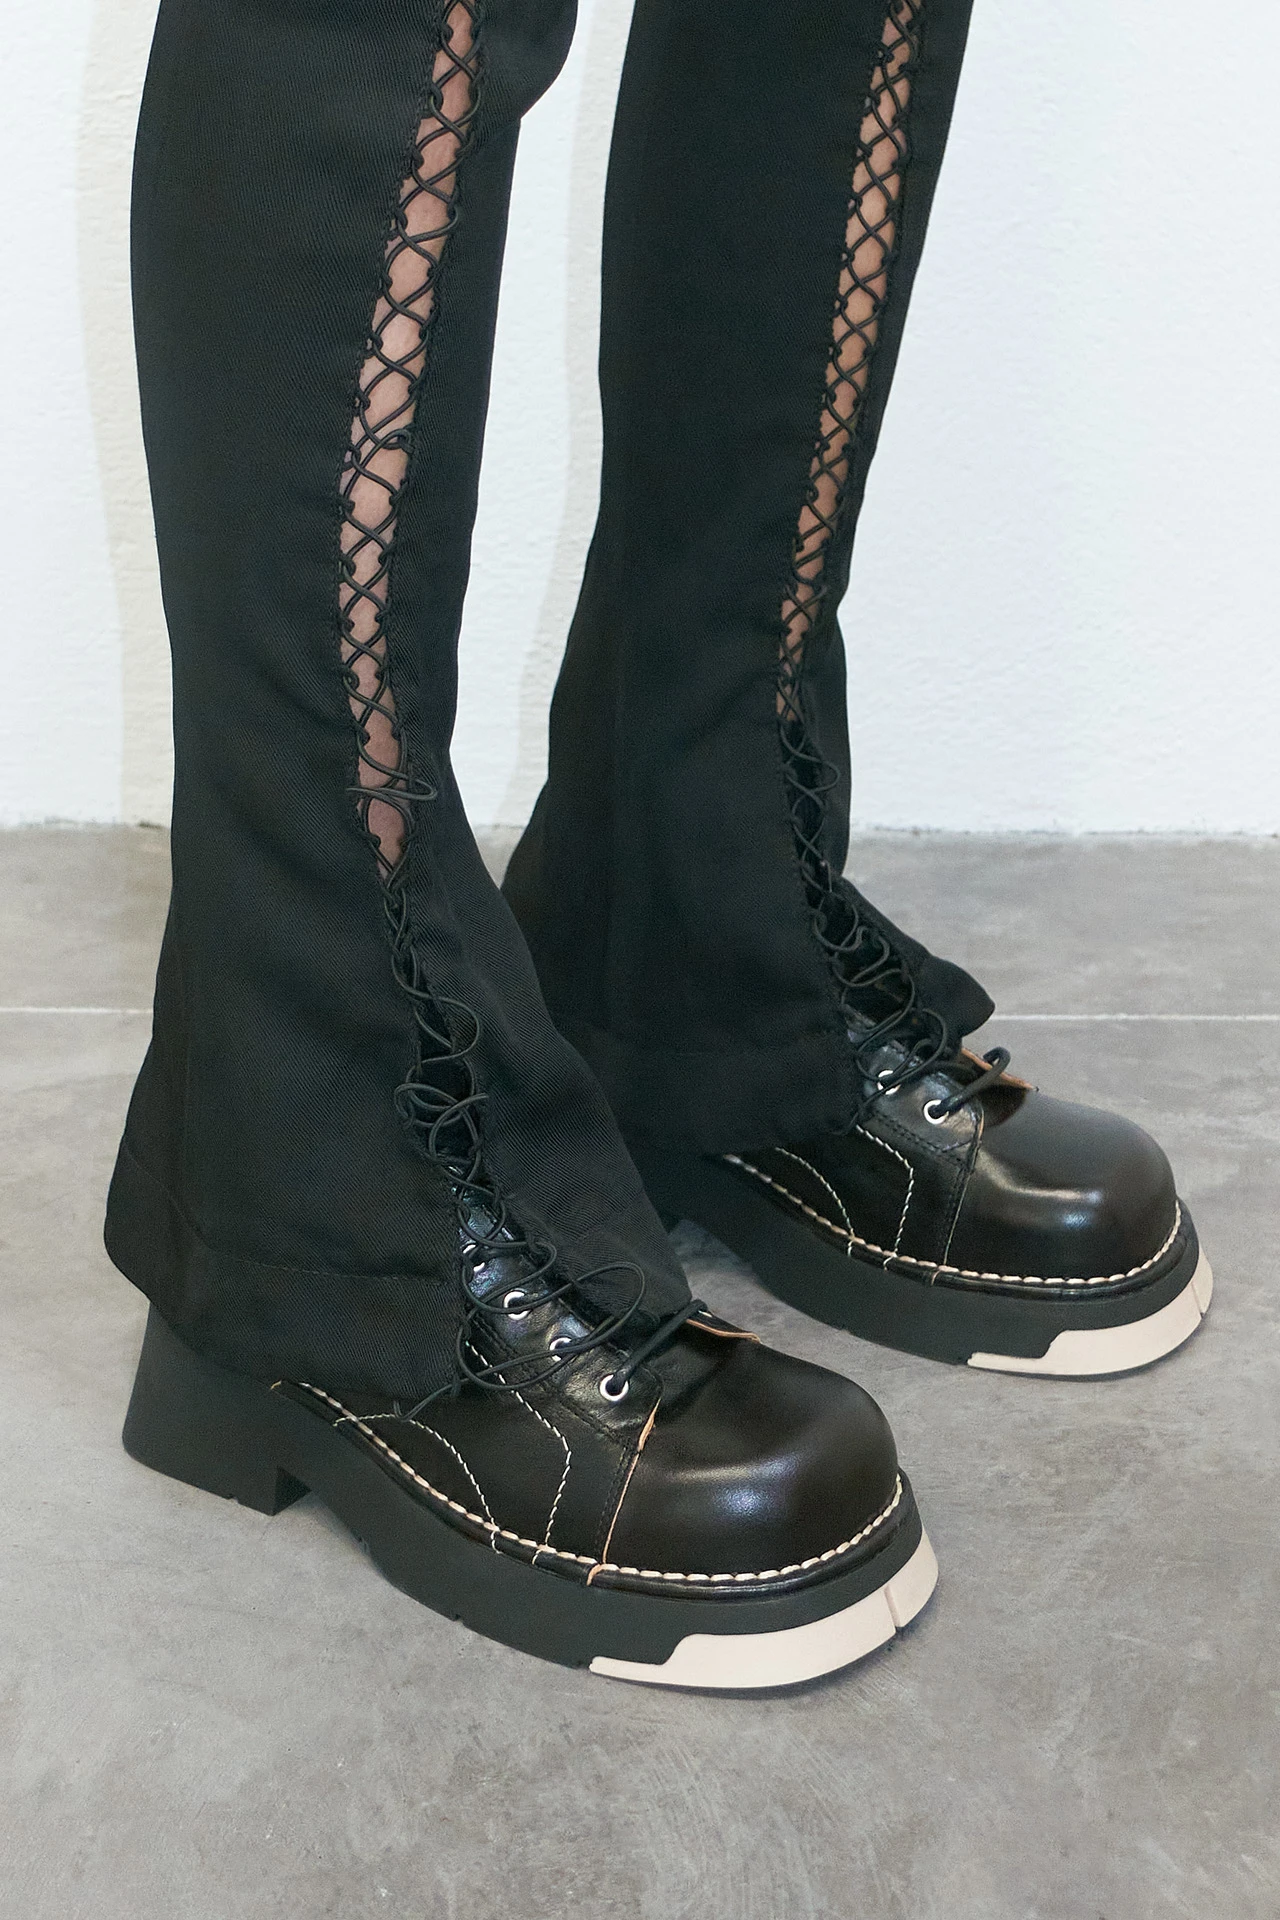 EC-miista-erina-black-ankle-boots-01